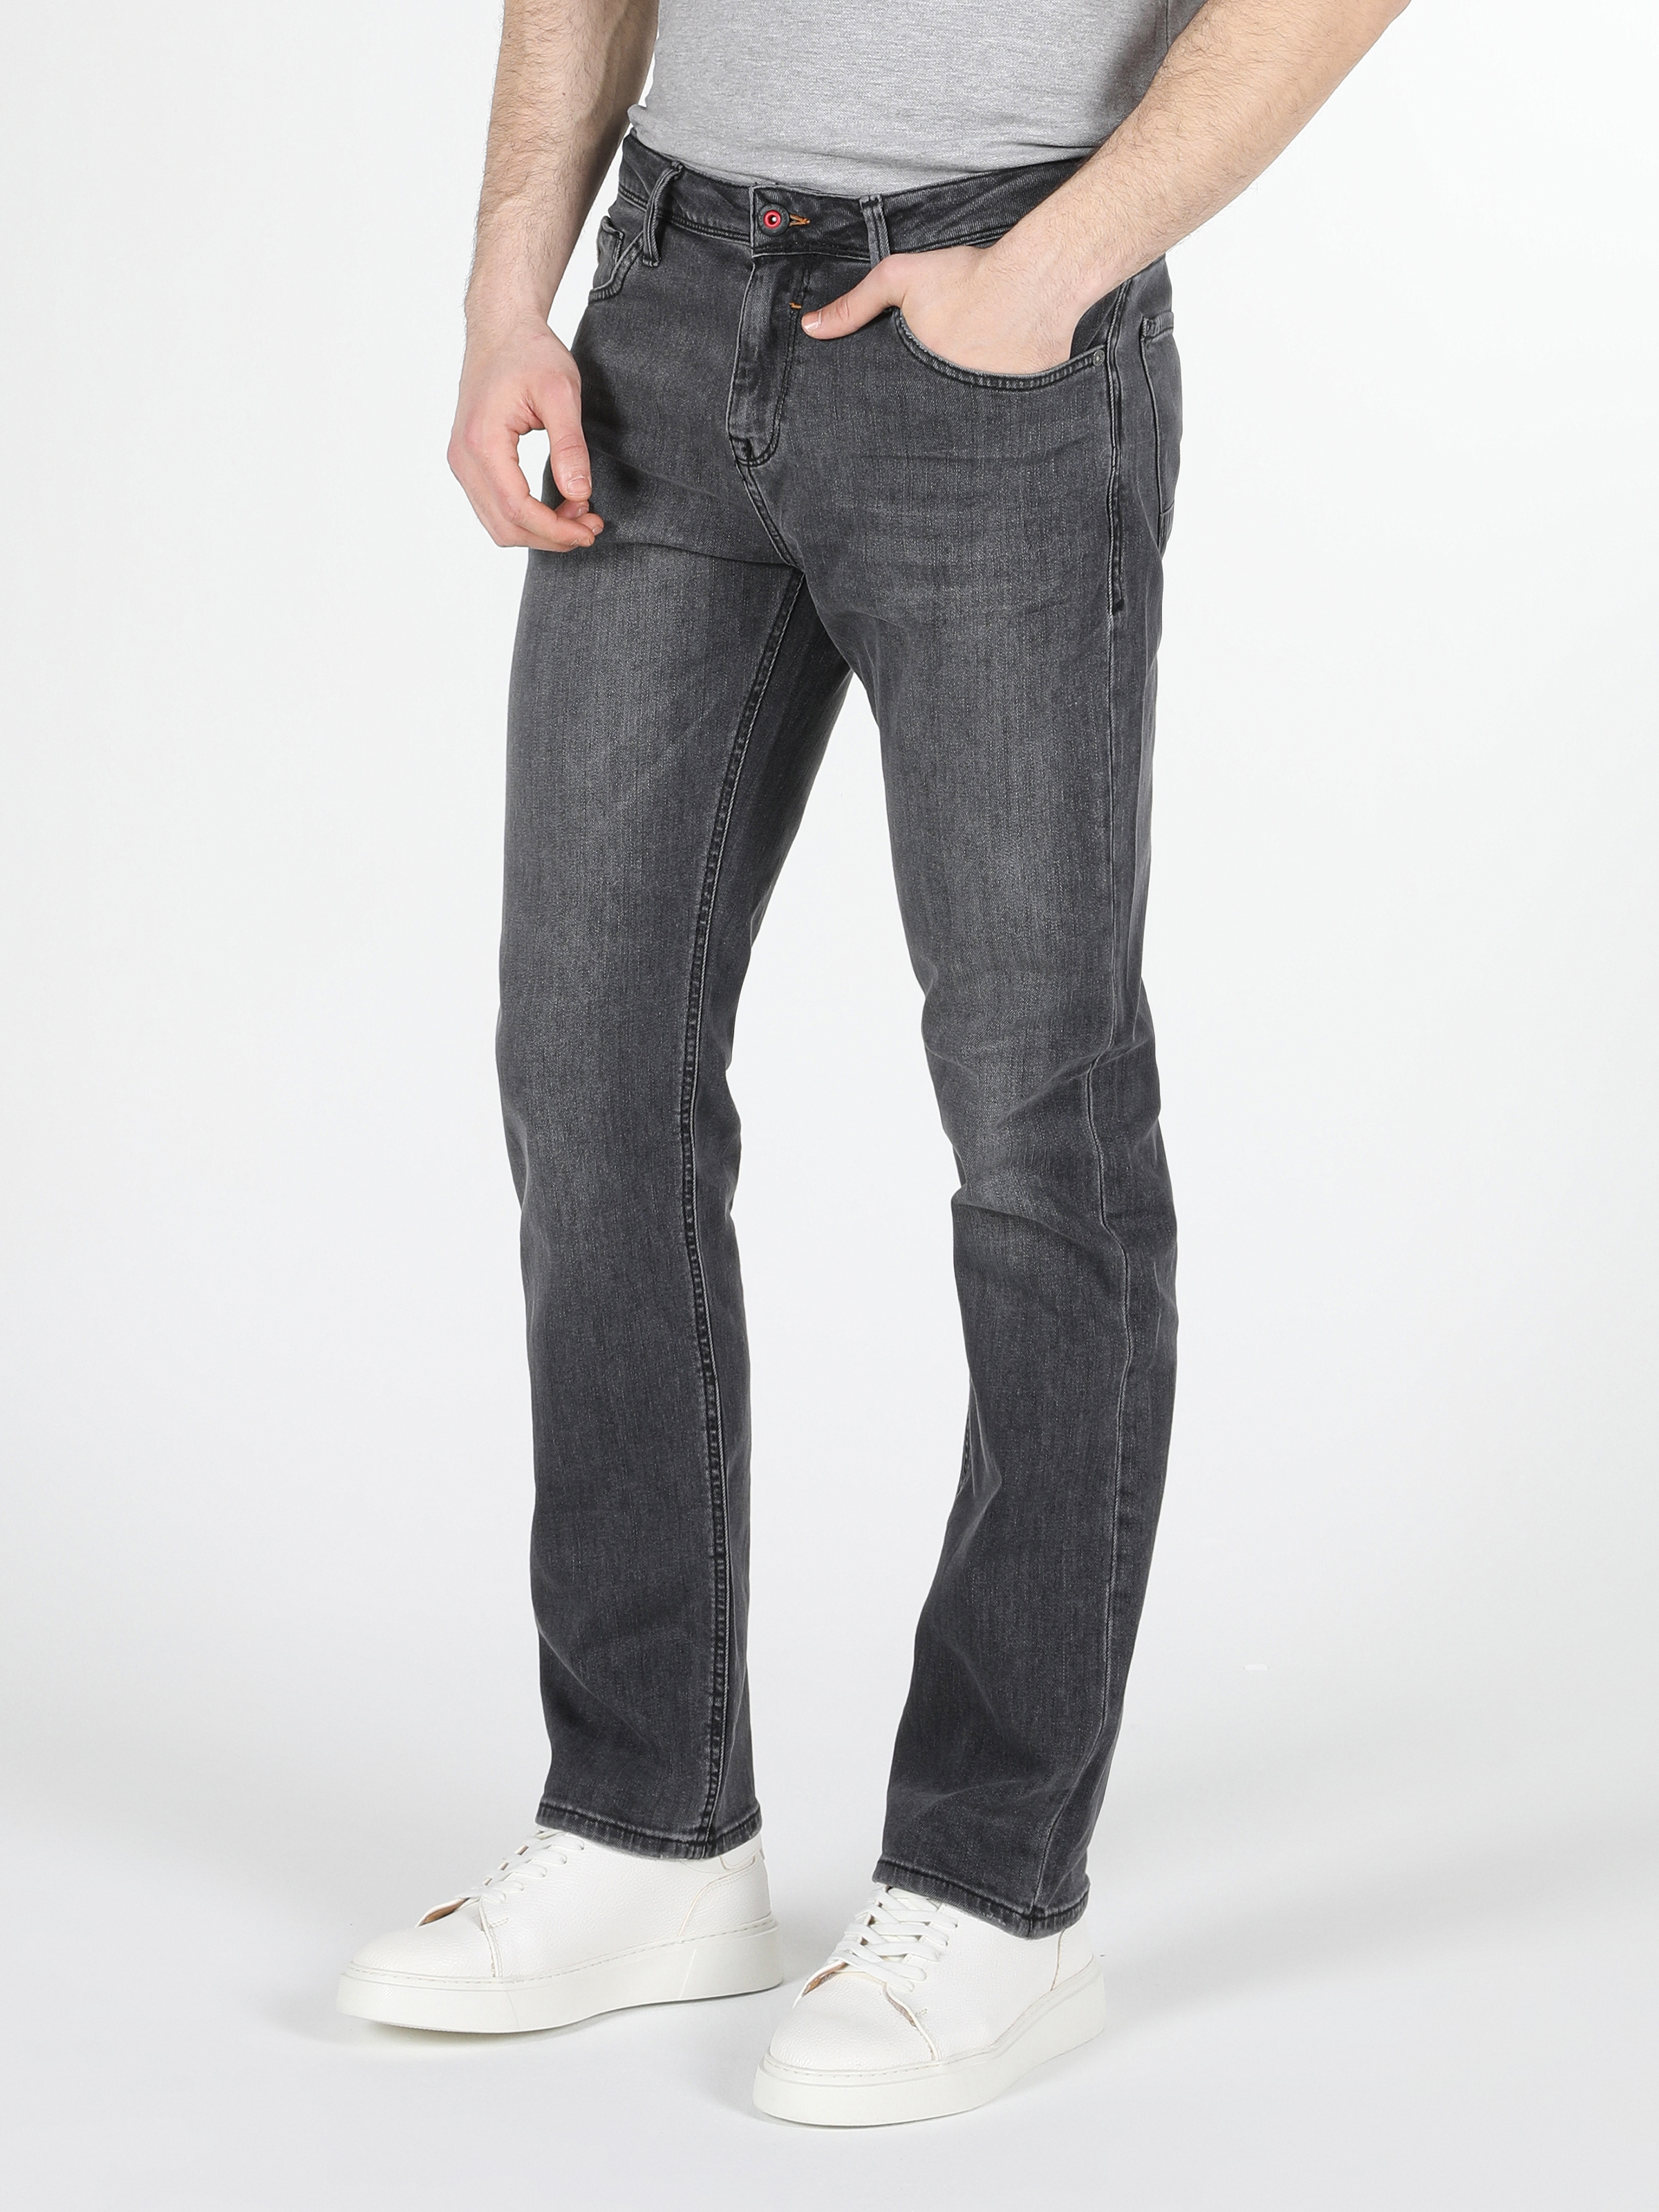 Afficher les détails de 045 David Coupe Régulière Taille Moyenne Jean Droit Pantalon Pour Homme